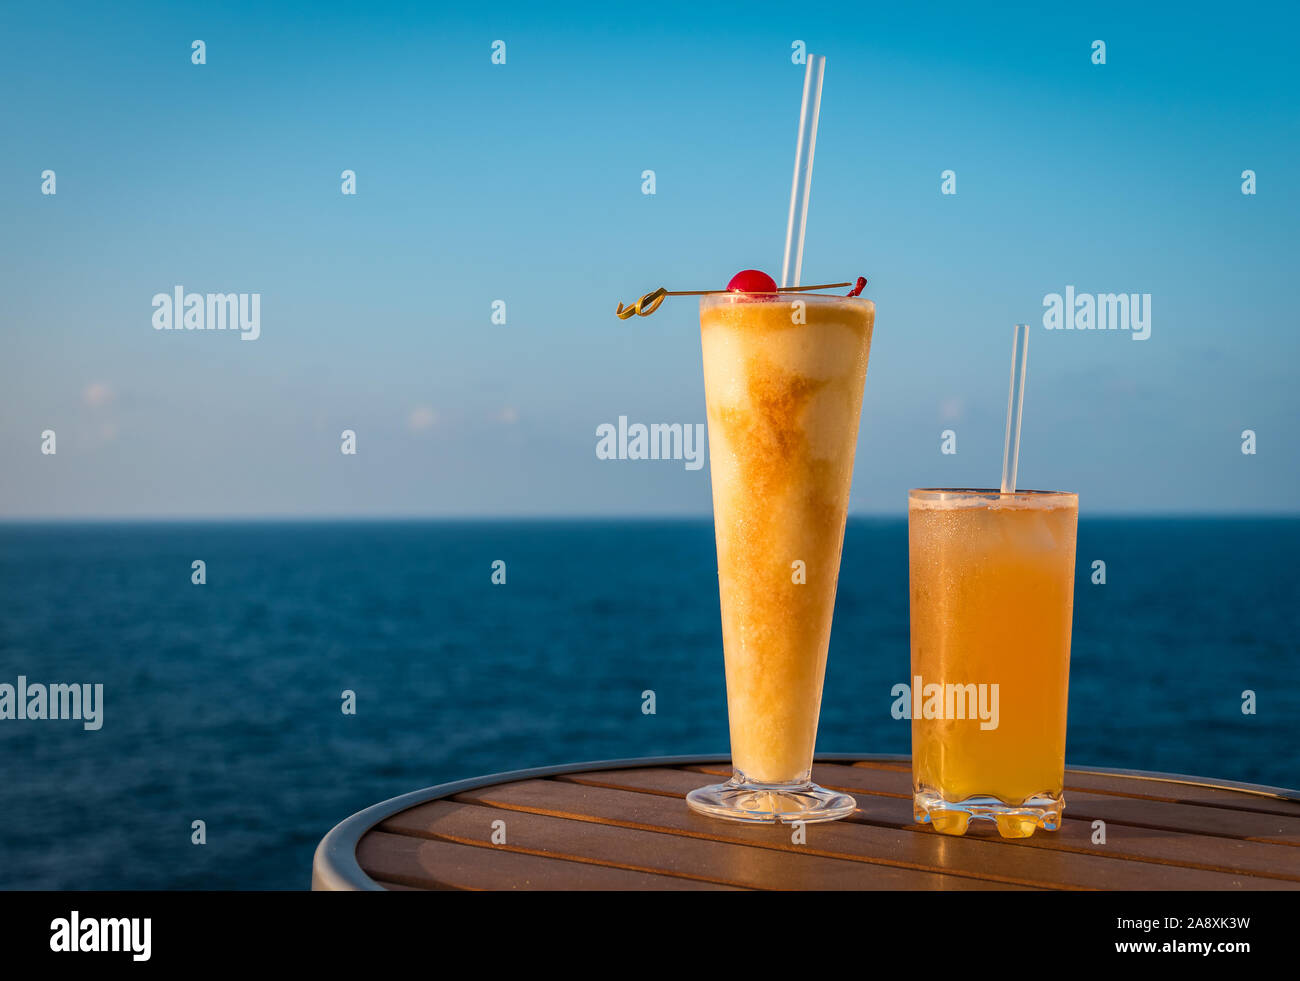 Maison de délicieux cocktails sur une table d'un navire de croisière. Arrière-plan de la mer. Banque D'Images